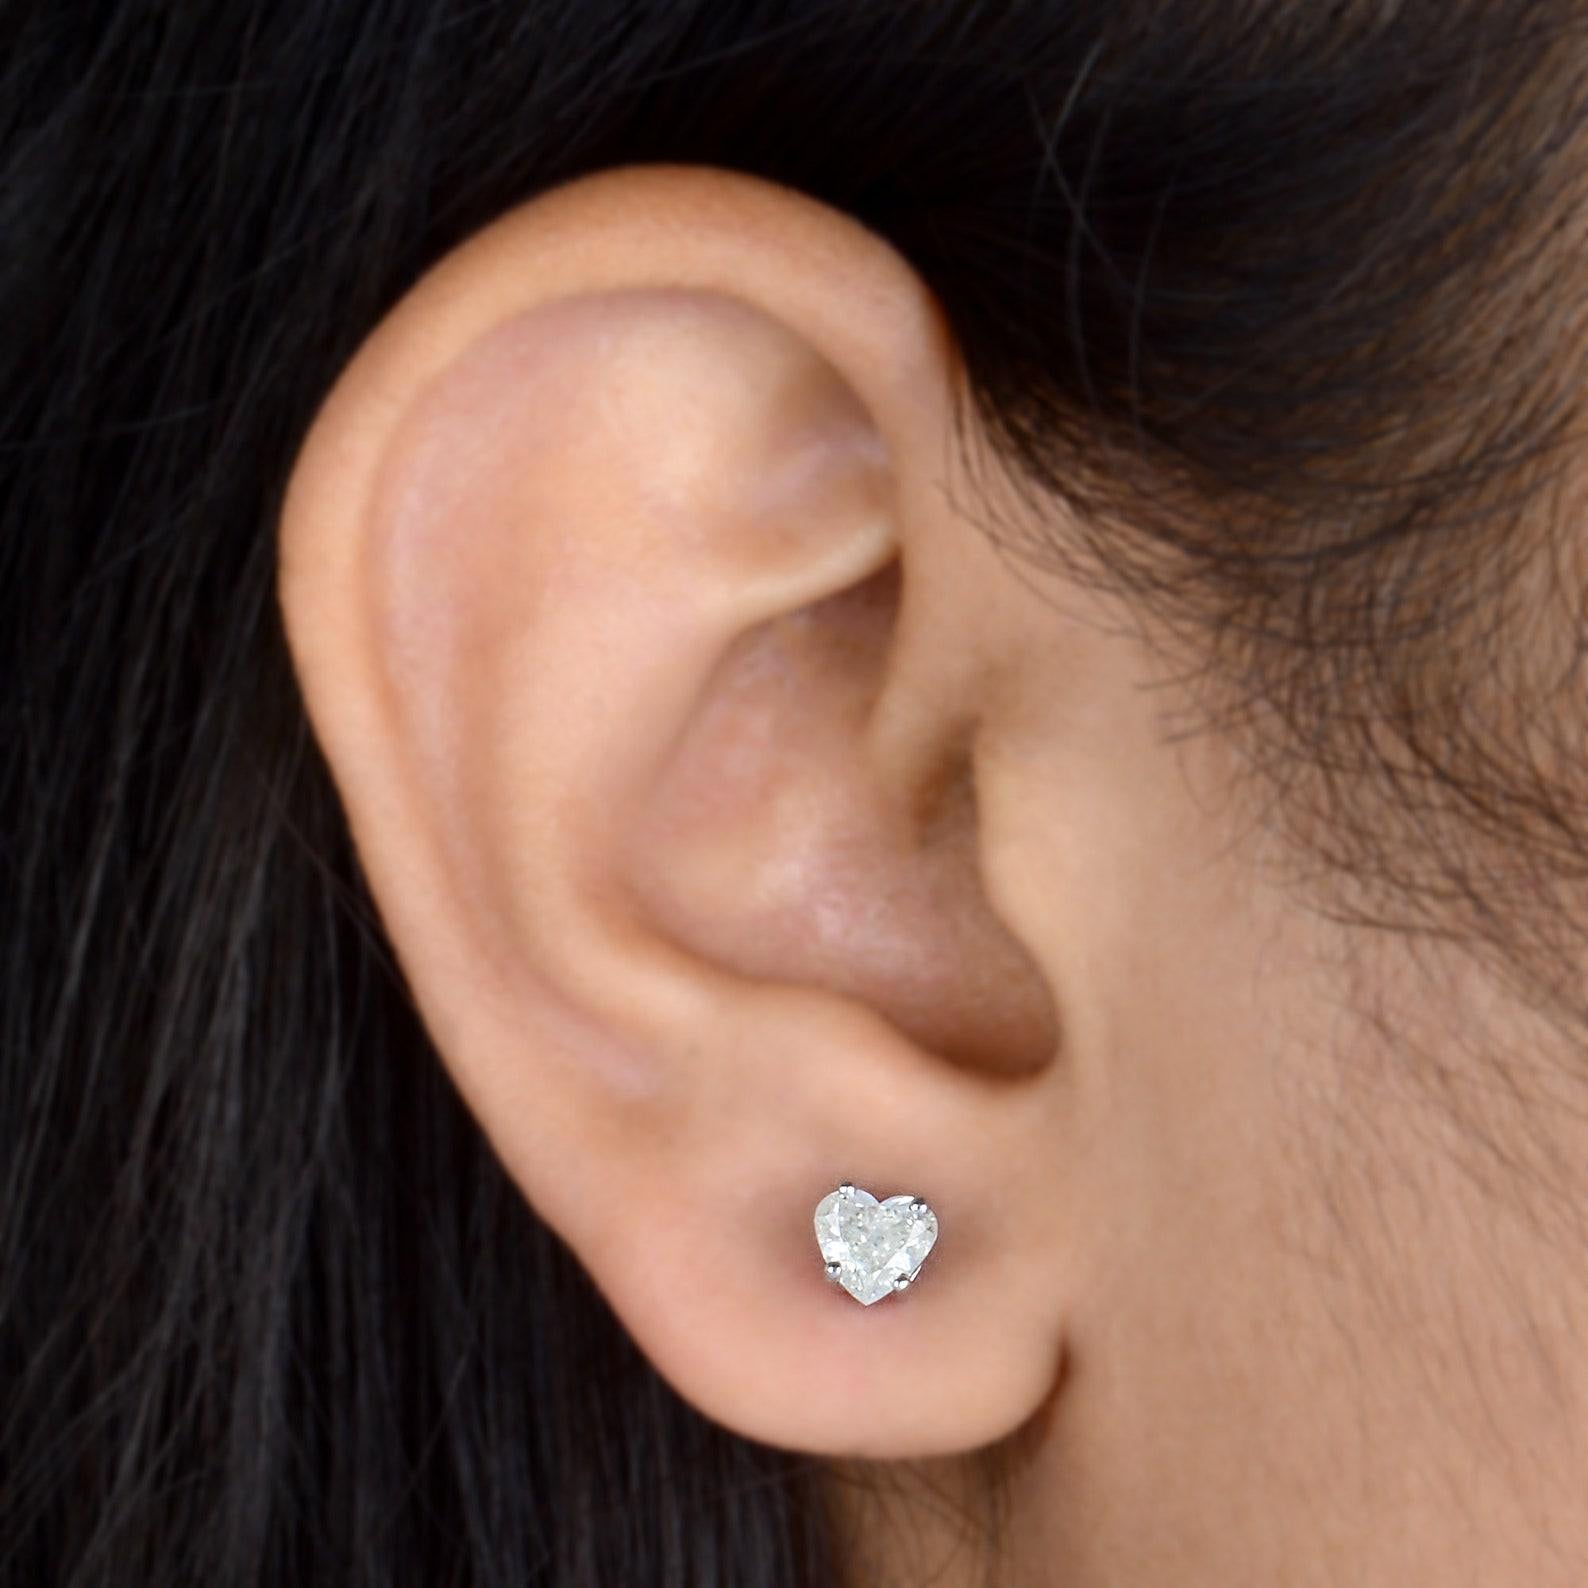 Ces boucles d'oreilles sont fabriquées à la main en or 10 carats et ornées de diamants en forme de cœur de 0,85 carats. 

SUIVRE  La vitrine de MEGHNA JEWELS pour découvrir la dernière collection et les pièces exclusives.  Meghna Jewels se classe